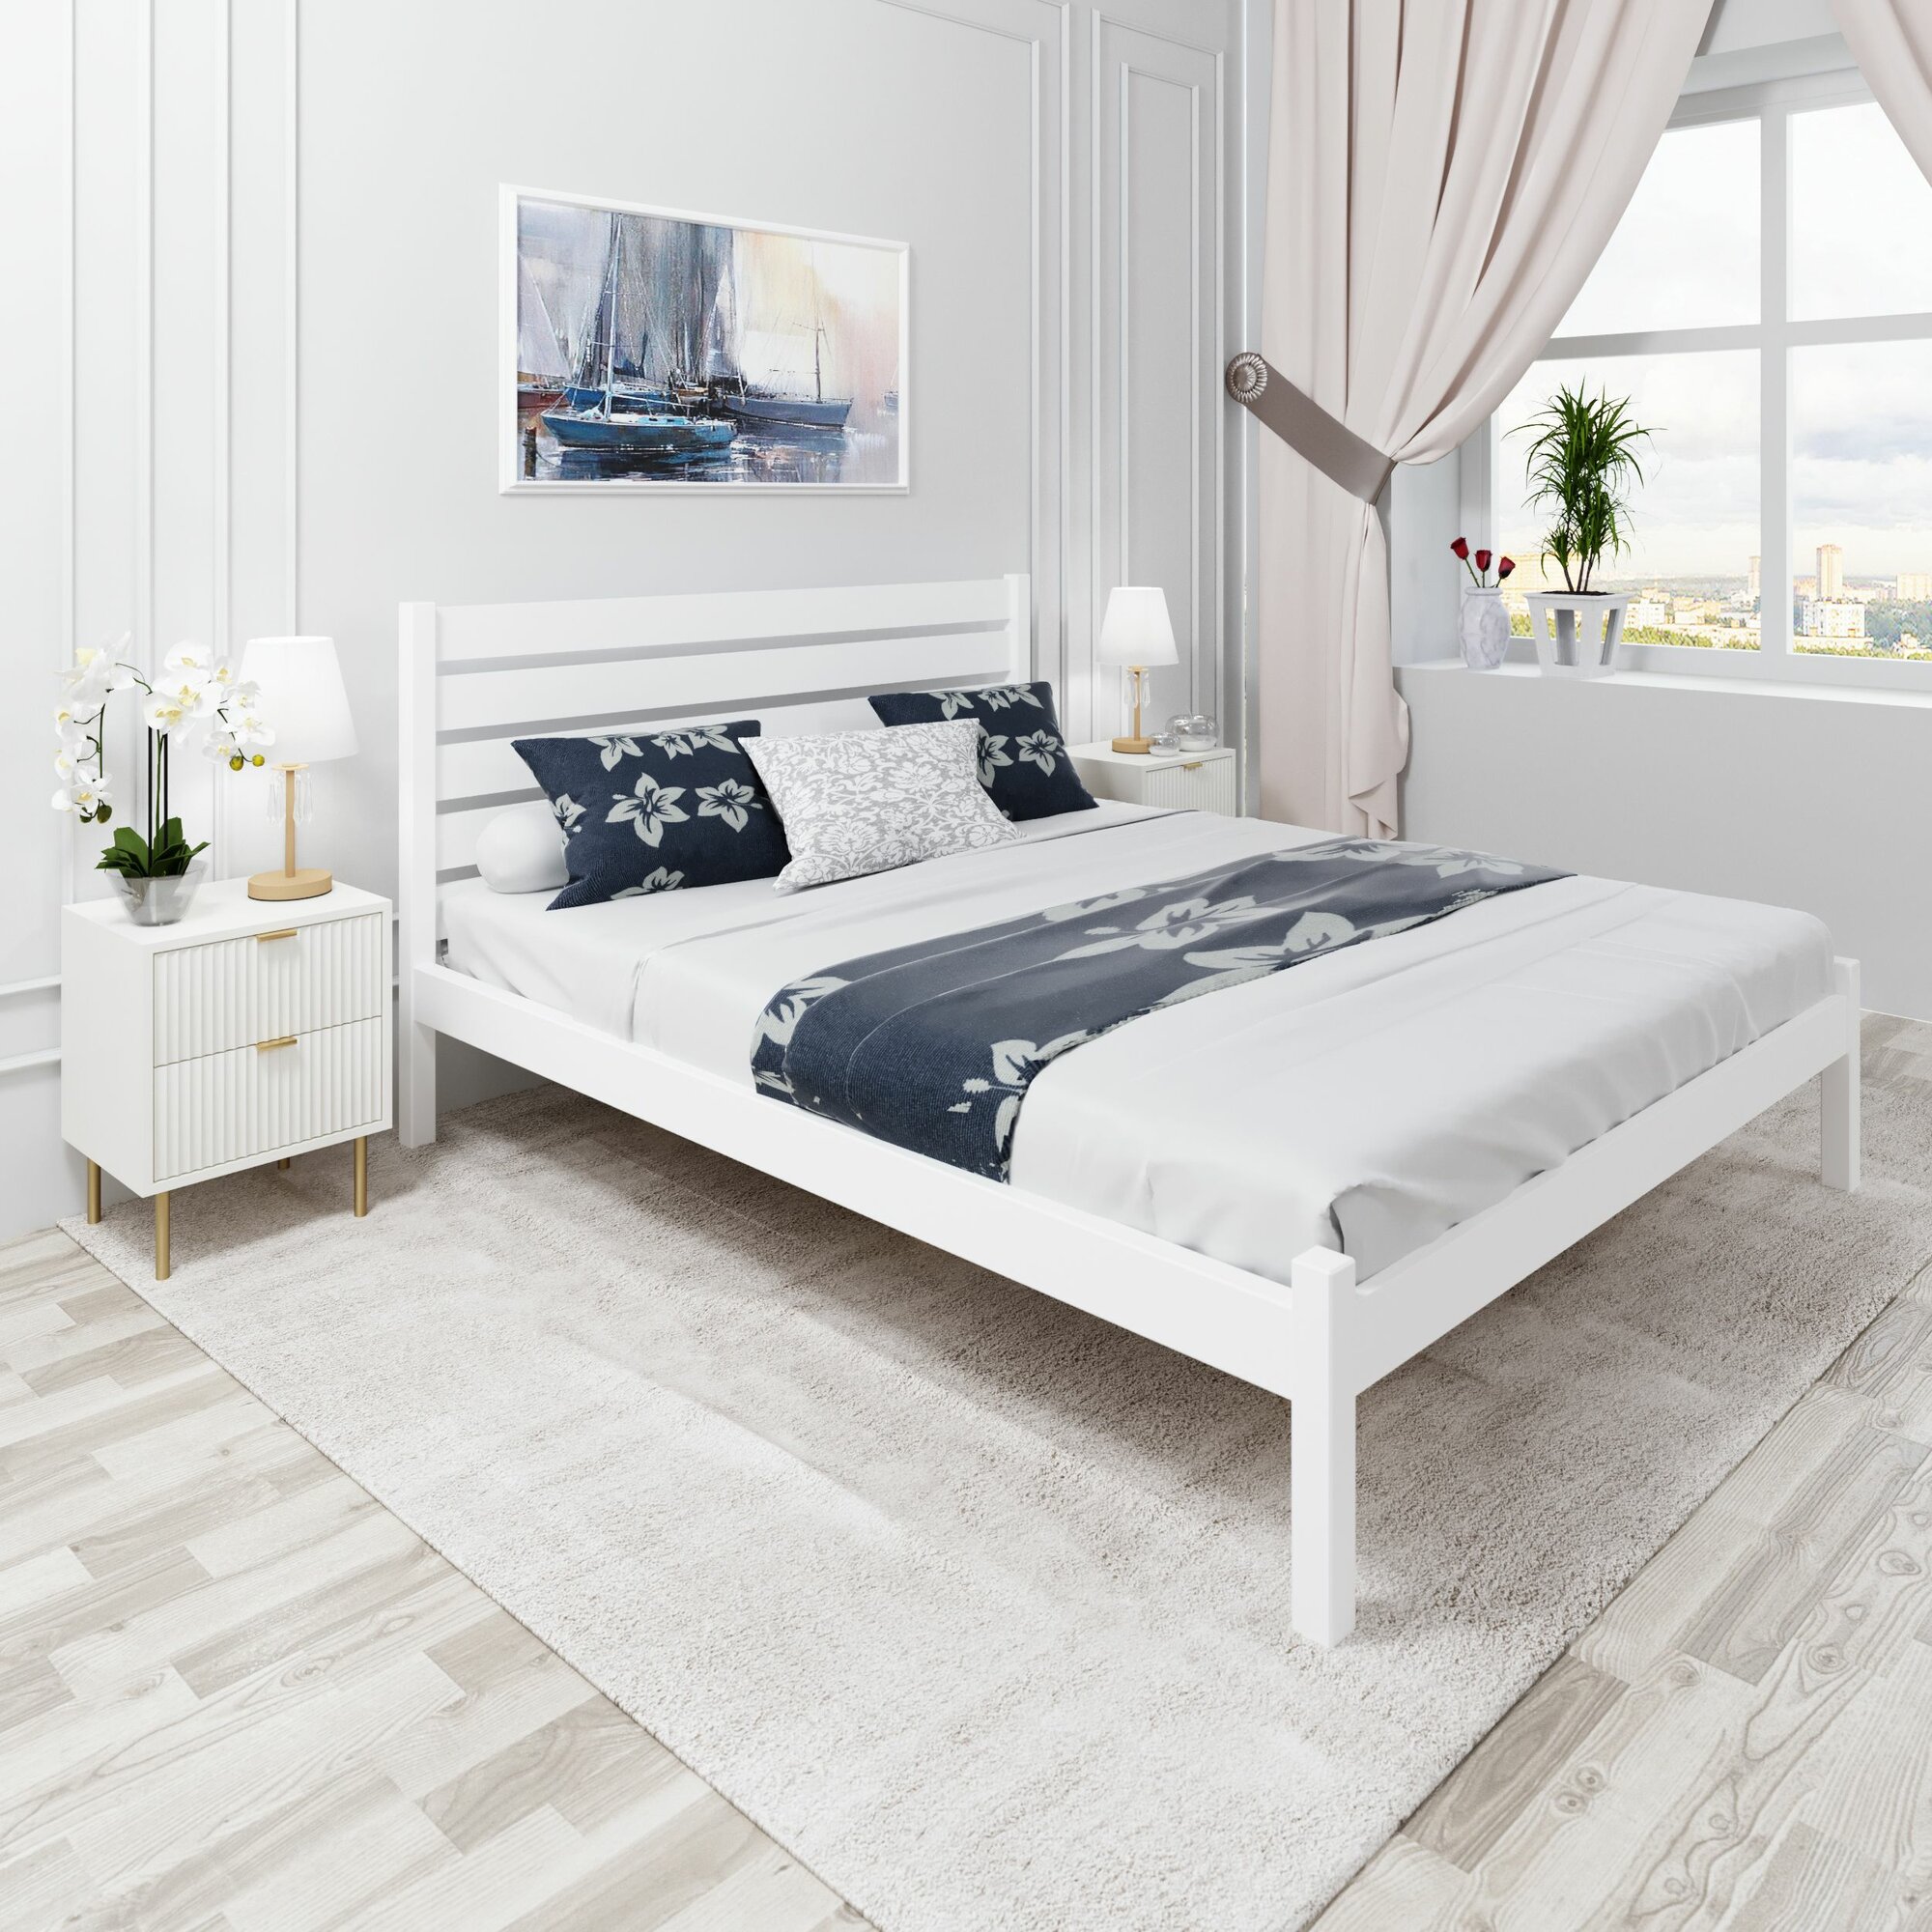 Кровать двуспальная Классика из массива сосны с высокой спинкой и реечным основанием, 200х160 см (габариты 210х170), цвет белый